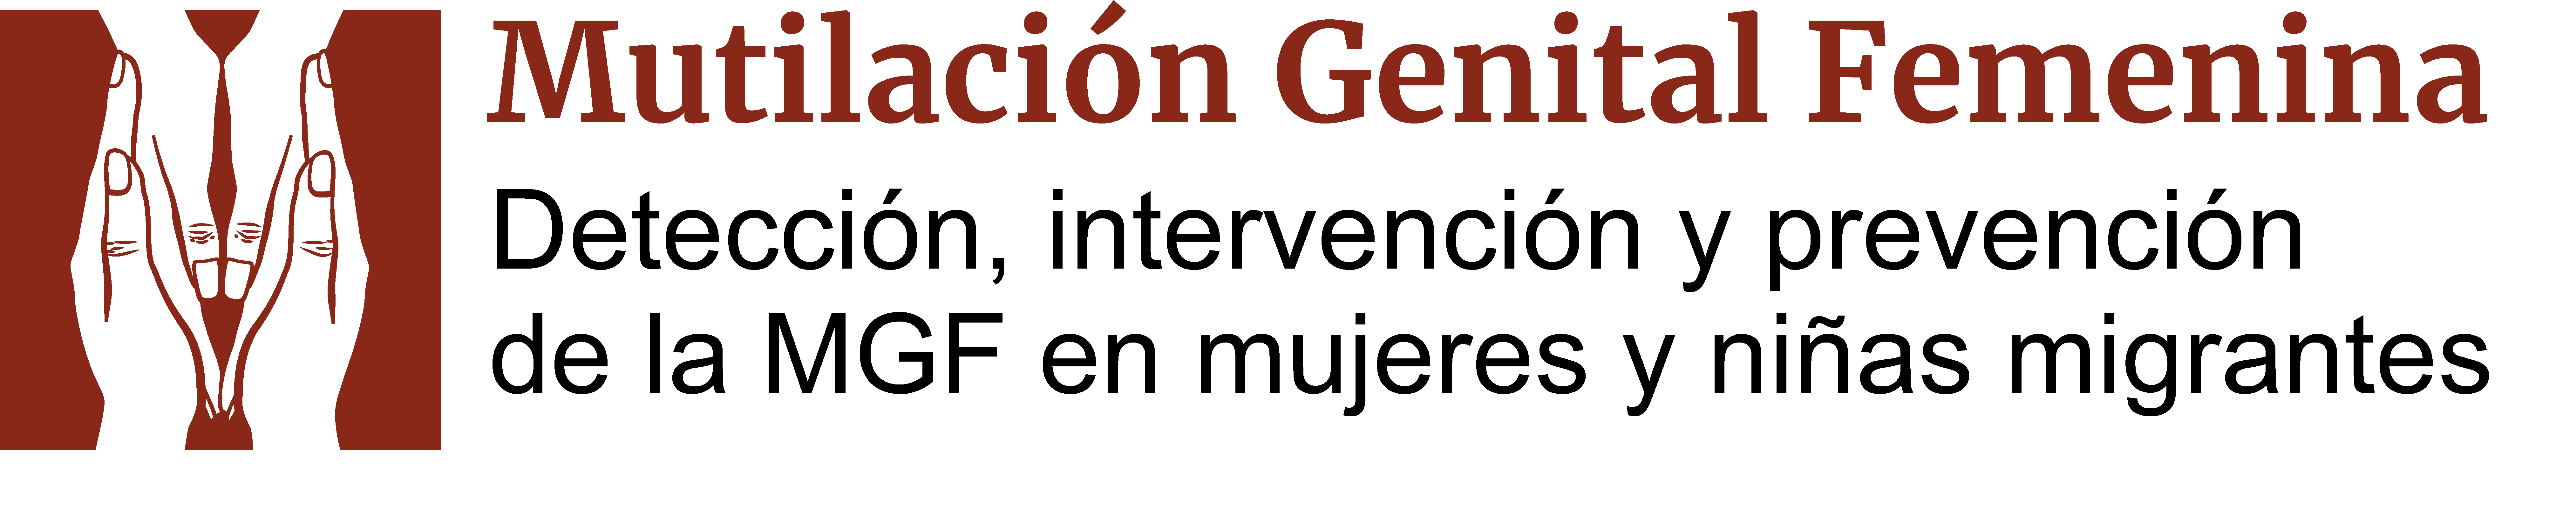 Detección, intervención y prevención de la mutilación genital femenina en mujeres y niñas migrantes